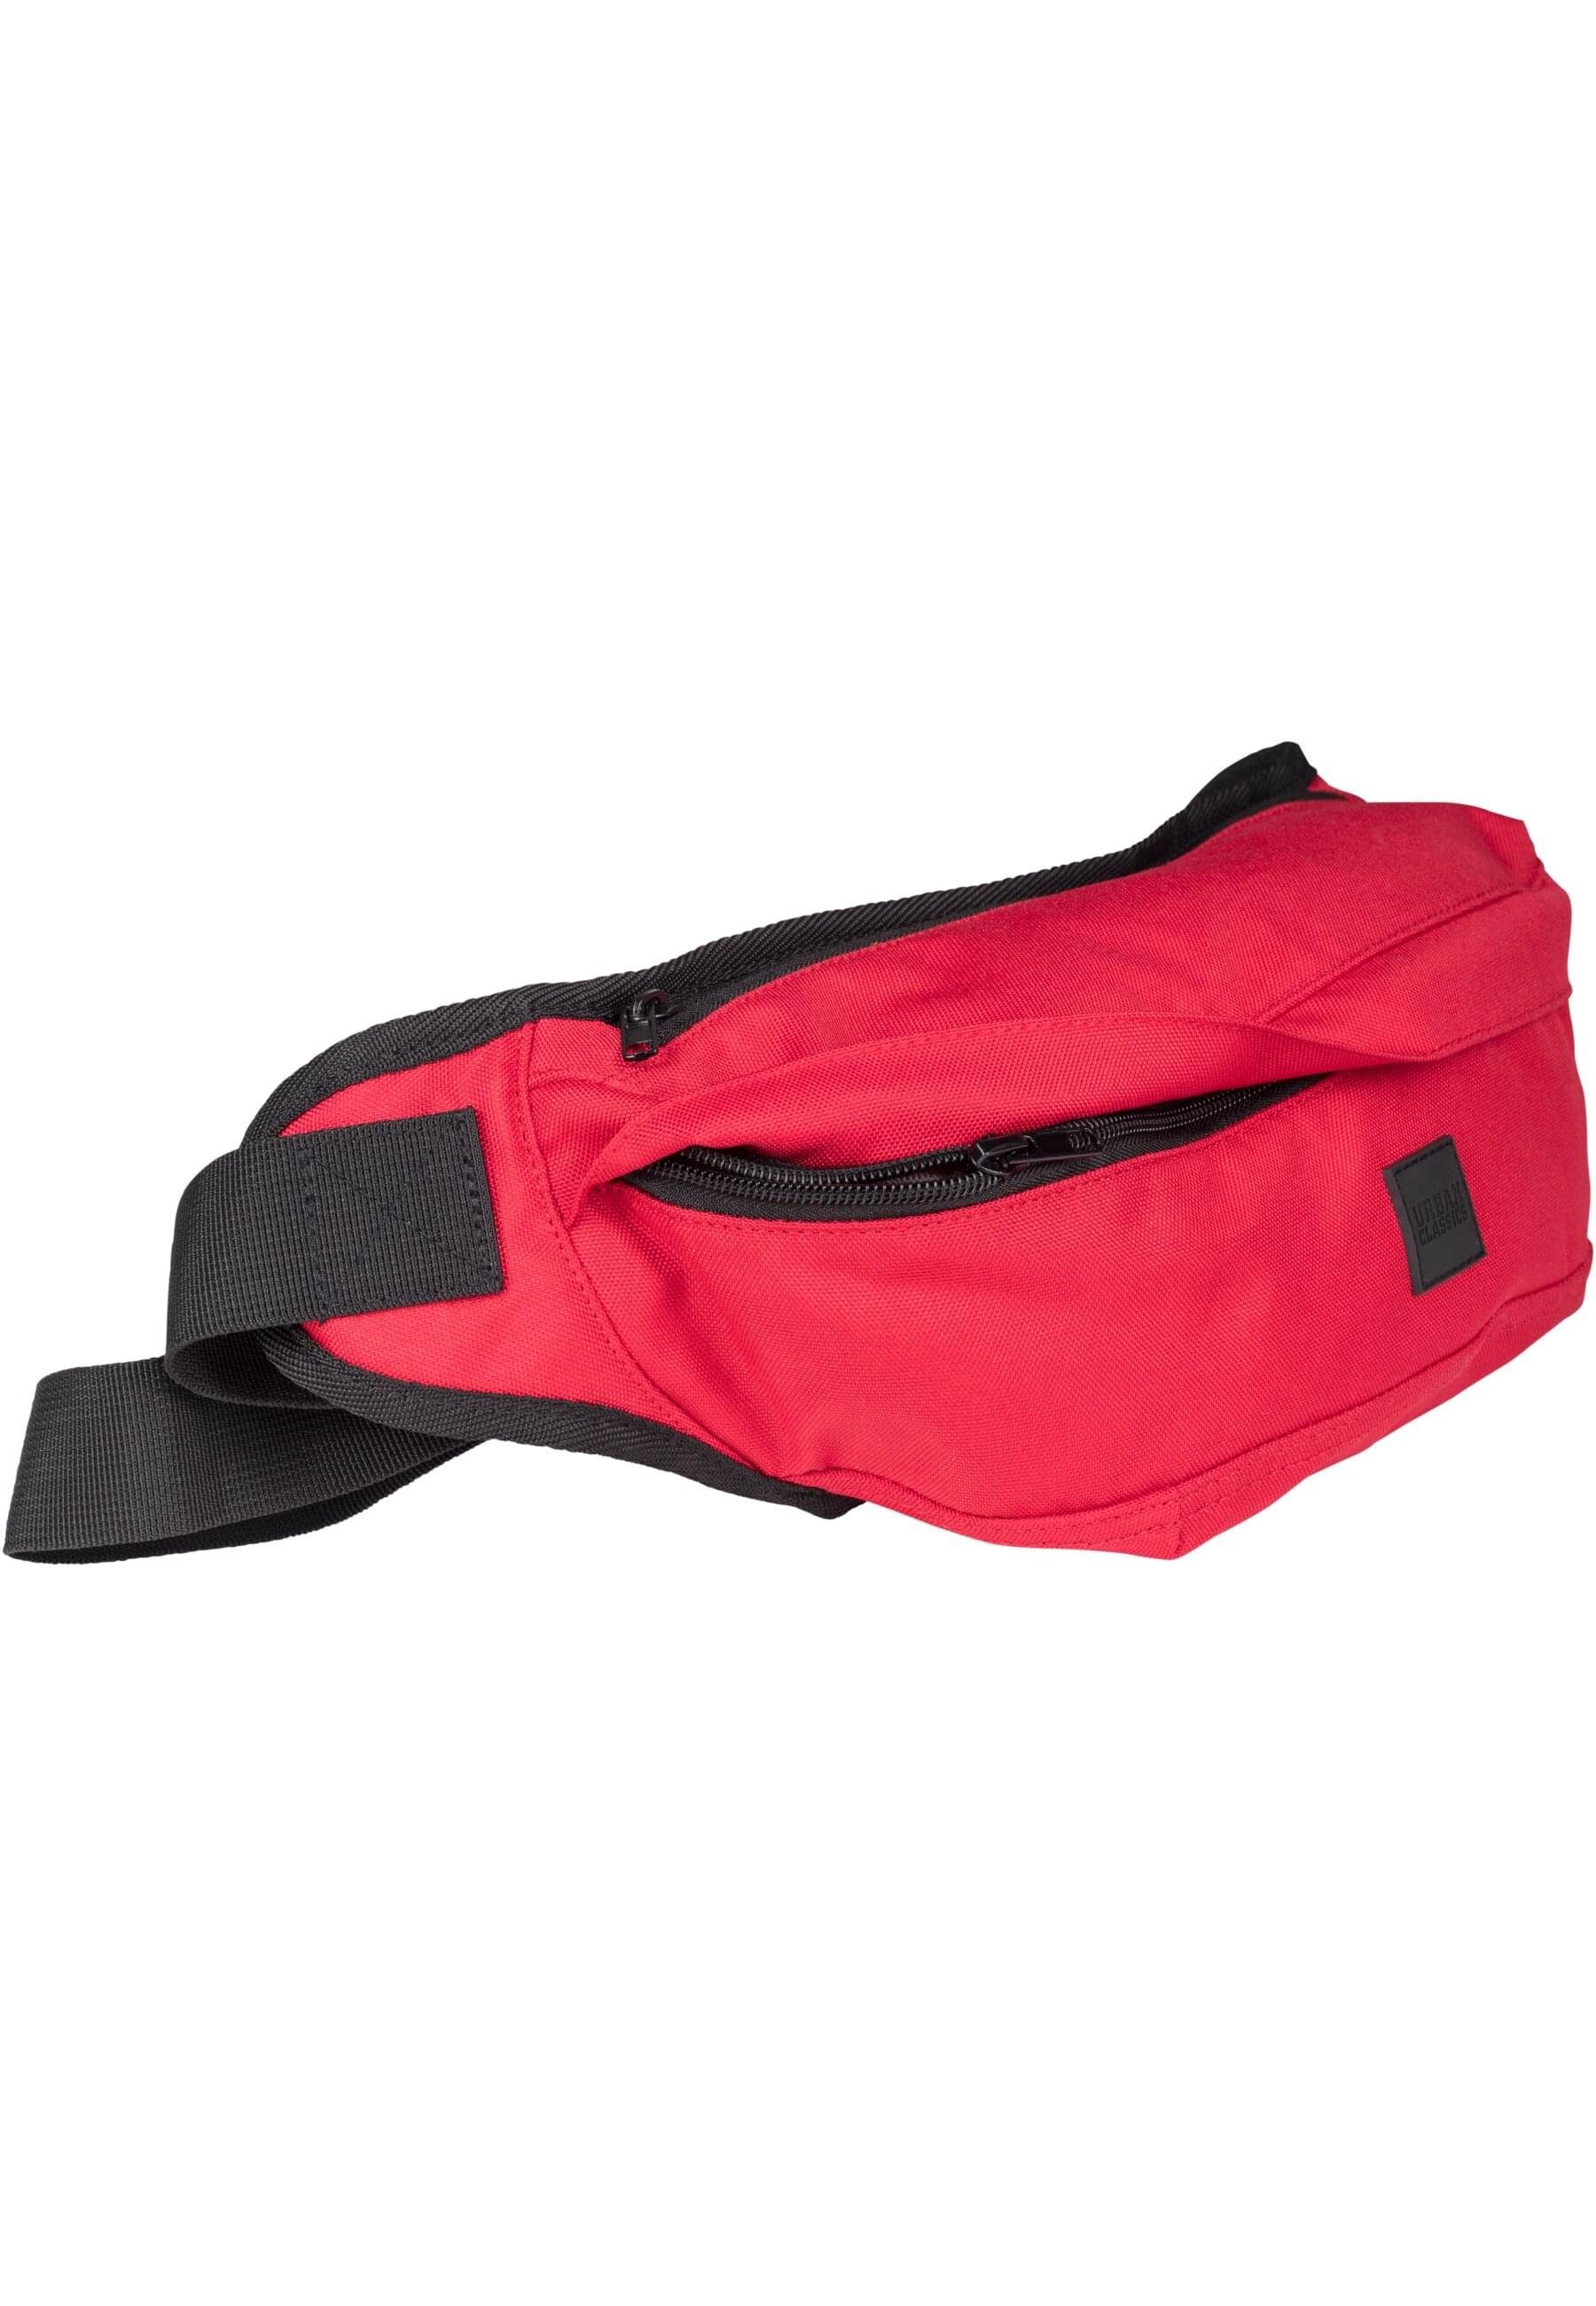 (1-tlg) Unisex Shoulder Bag red Handtasche CLASSICS URBAN